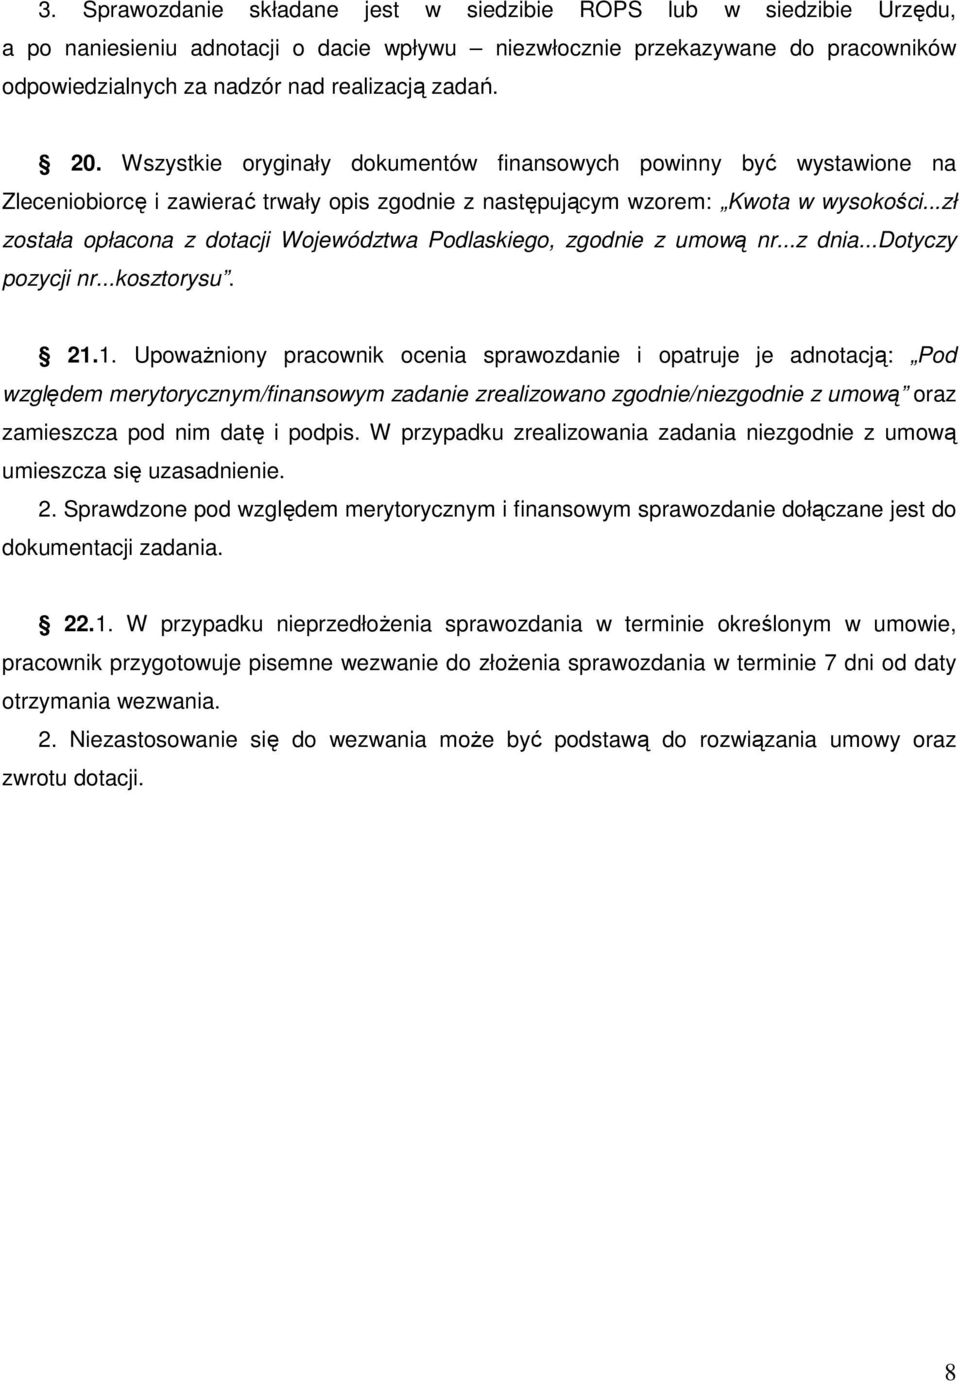 ..zł została opłacona z dotacji Województwa Podlaskiego, zgodnie z umową nr...z dnia...dotyczy pozycji nr...kosztorysu. 21.